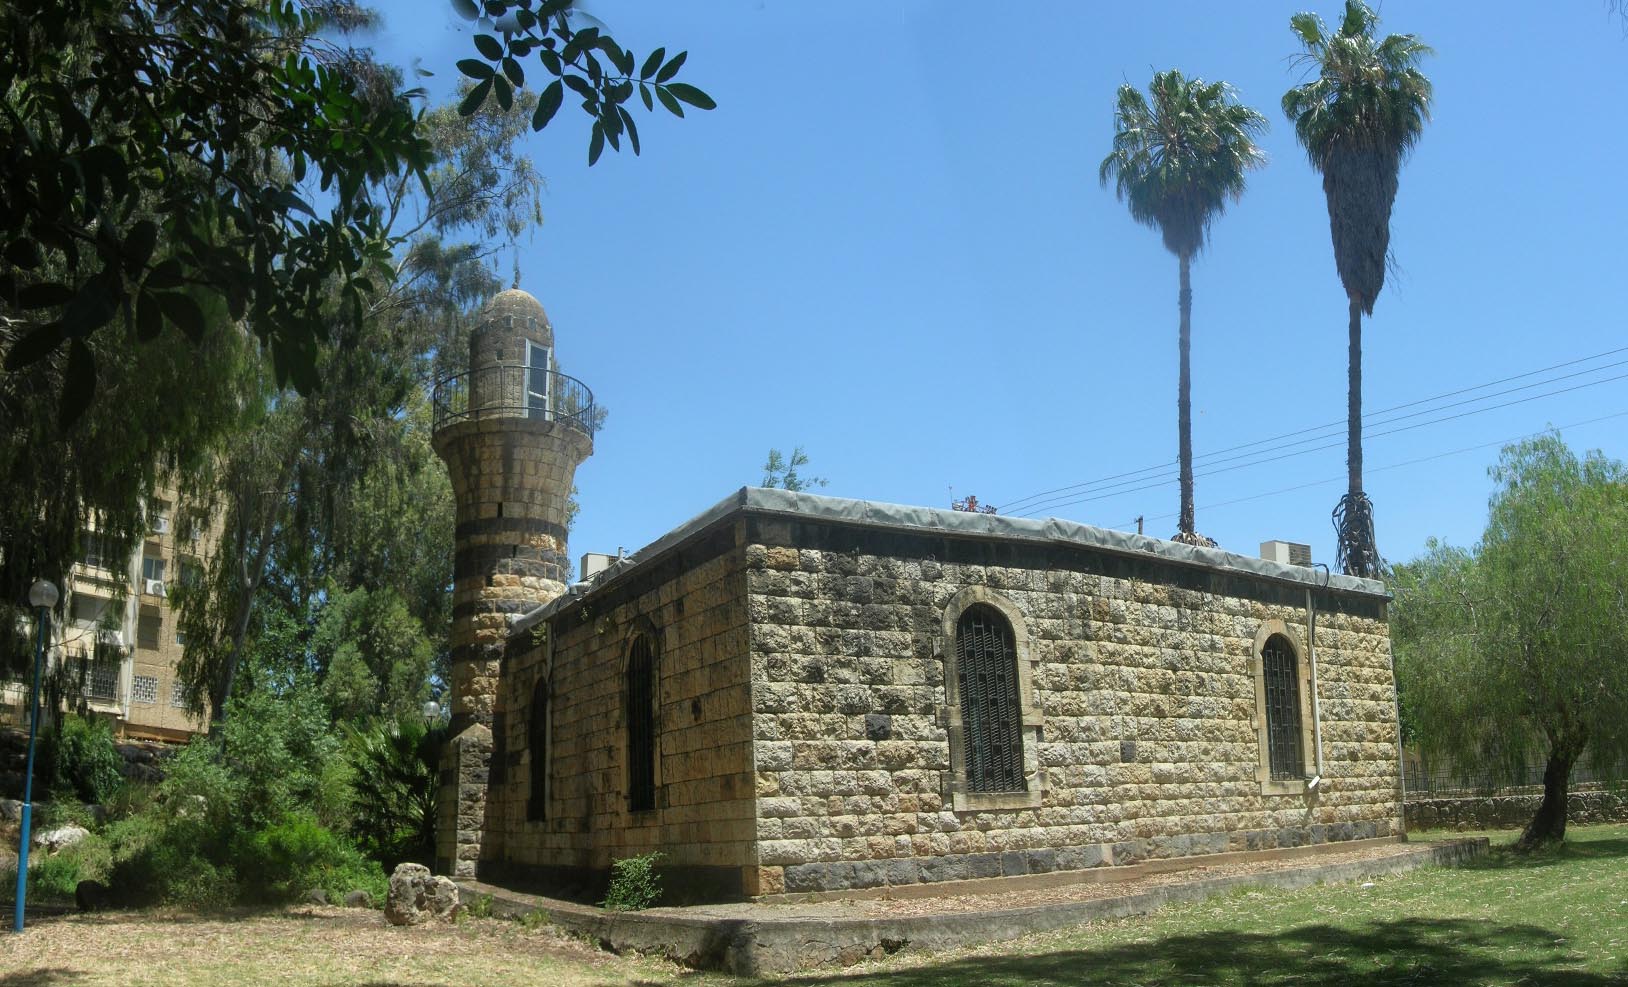 המסגד של אל-ח'אלצה, כיום המוזיאון לתולדות קריית שמונה. שוכן בפארק הזהב